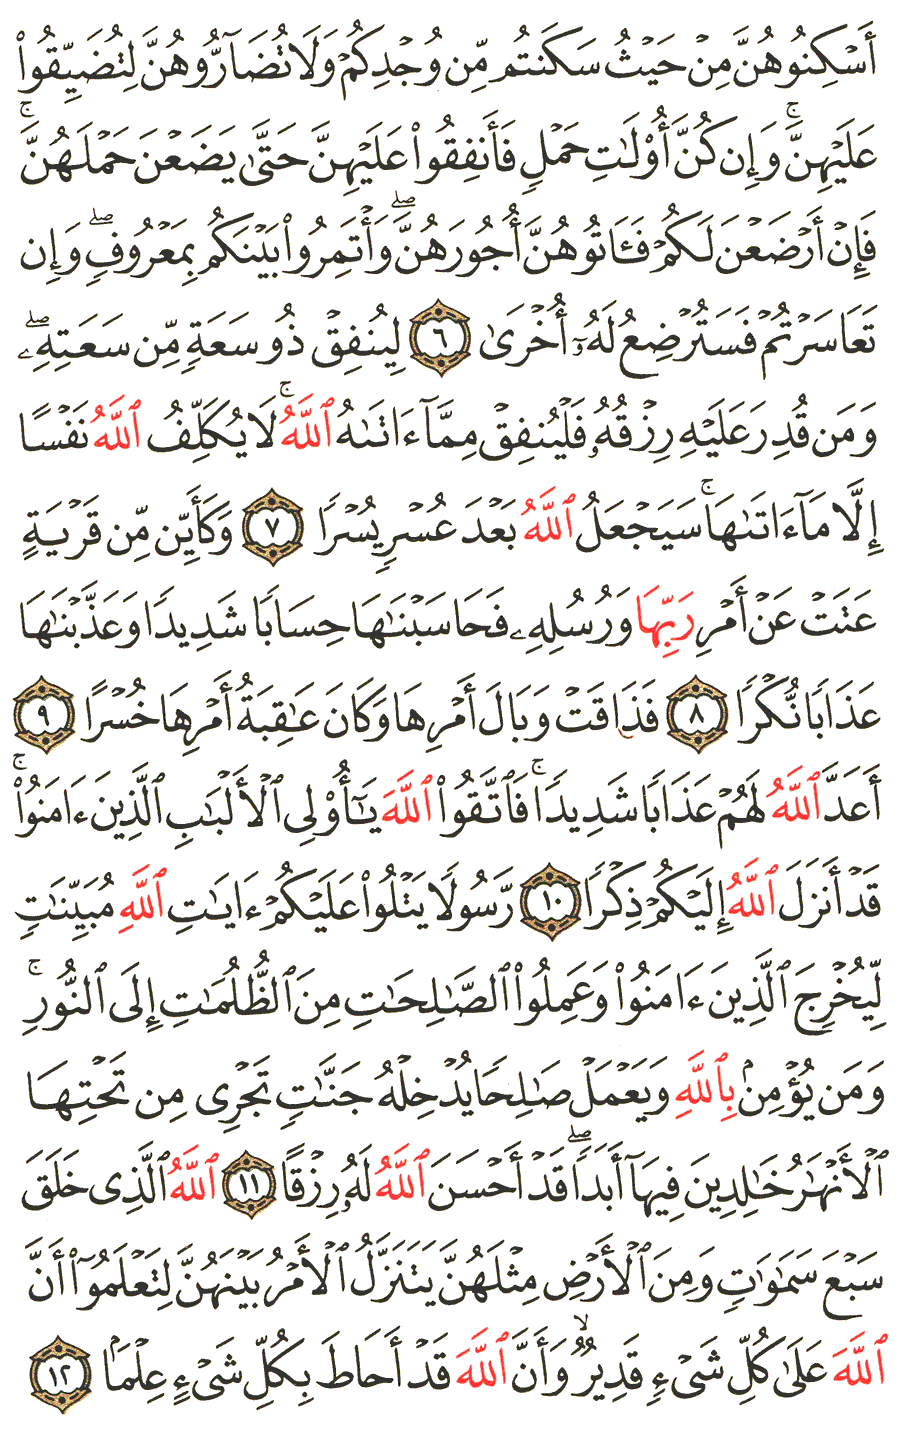 الصفحة رقم 559 من القرآن الكريم مكتوبة من المصحف